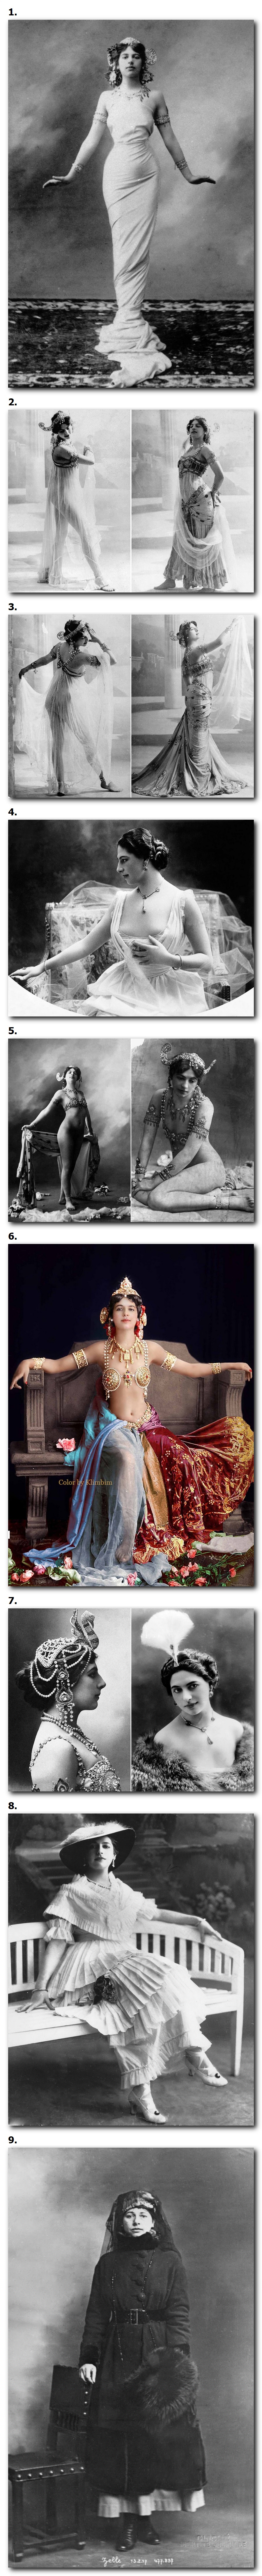 Mata Hari, la célèbre espion de la Première Guerre mondiale, 1905-1917